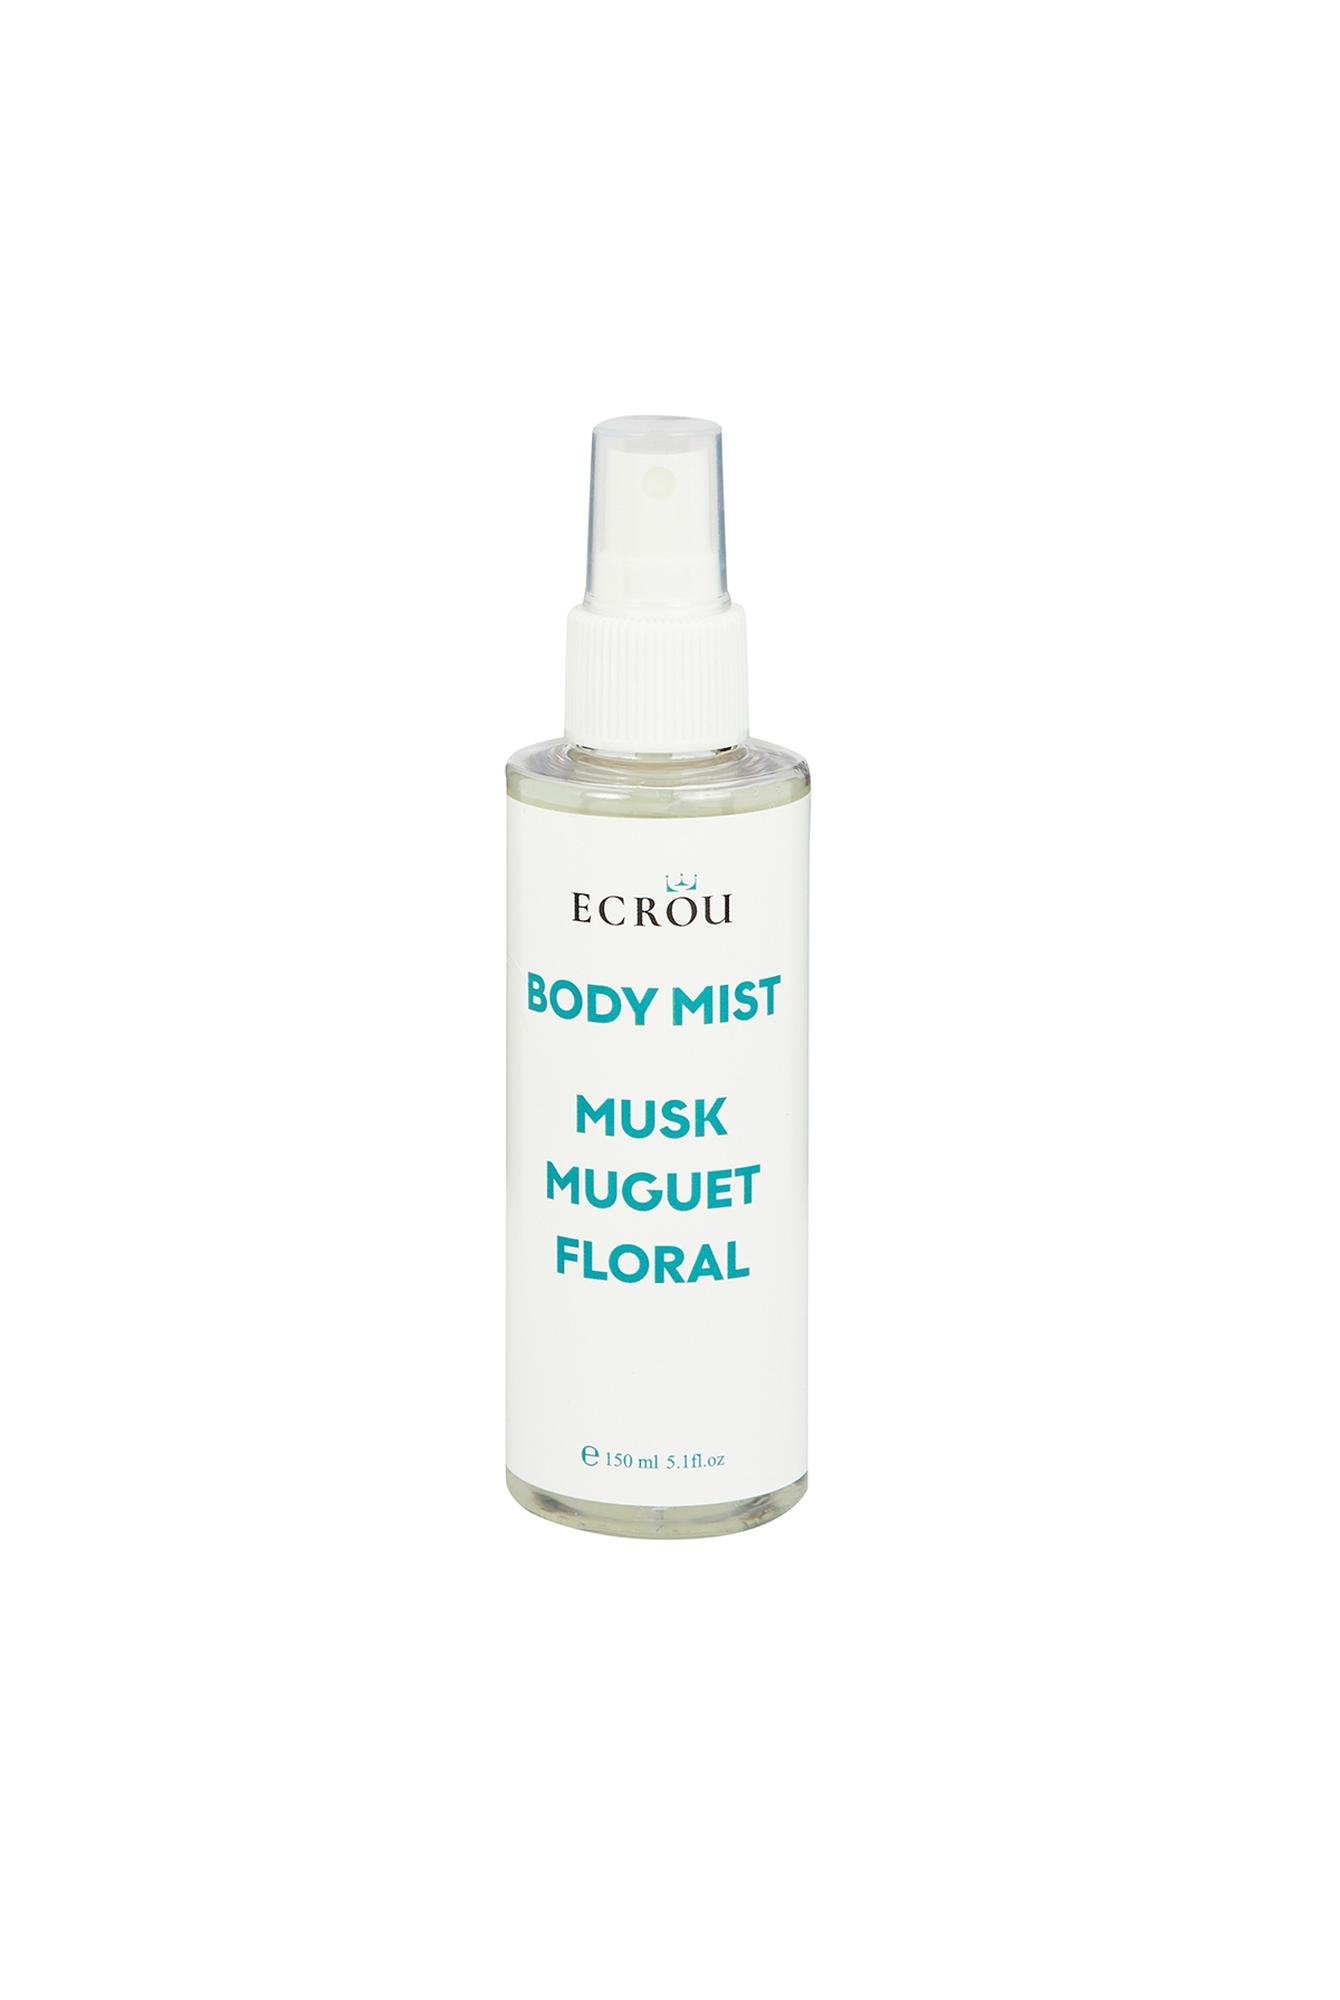  Ecrou Nice Body Mist Musk Muguet Floral 150 ml